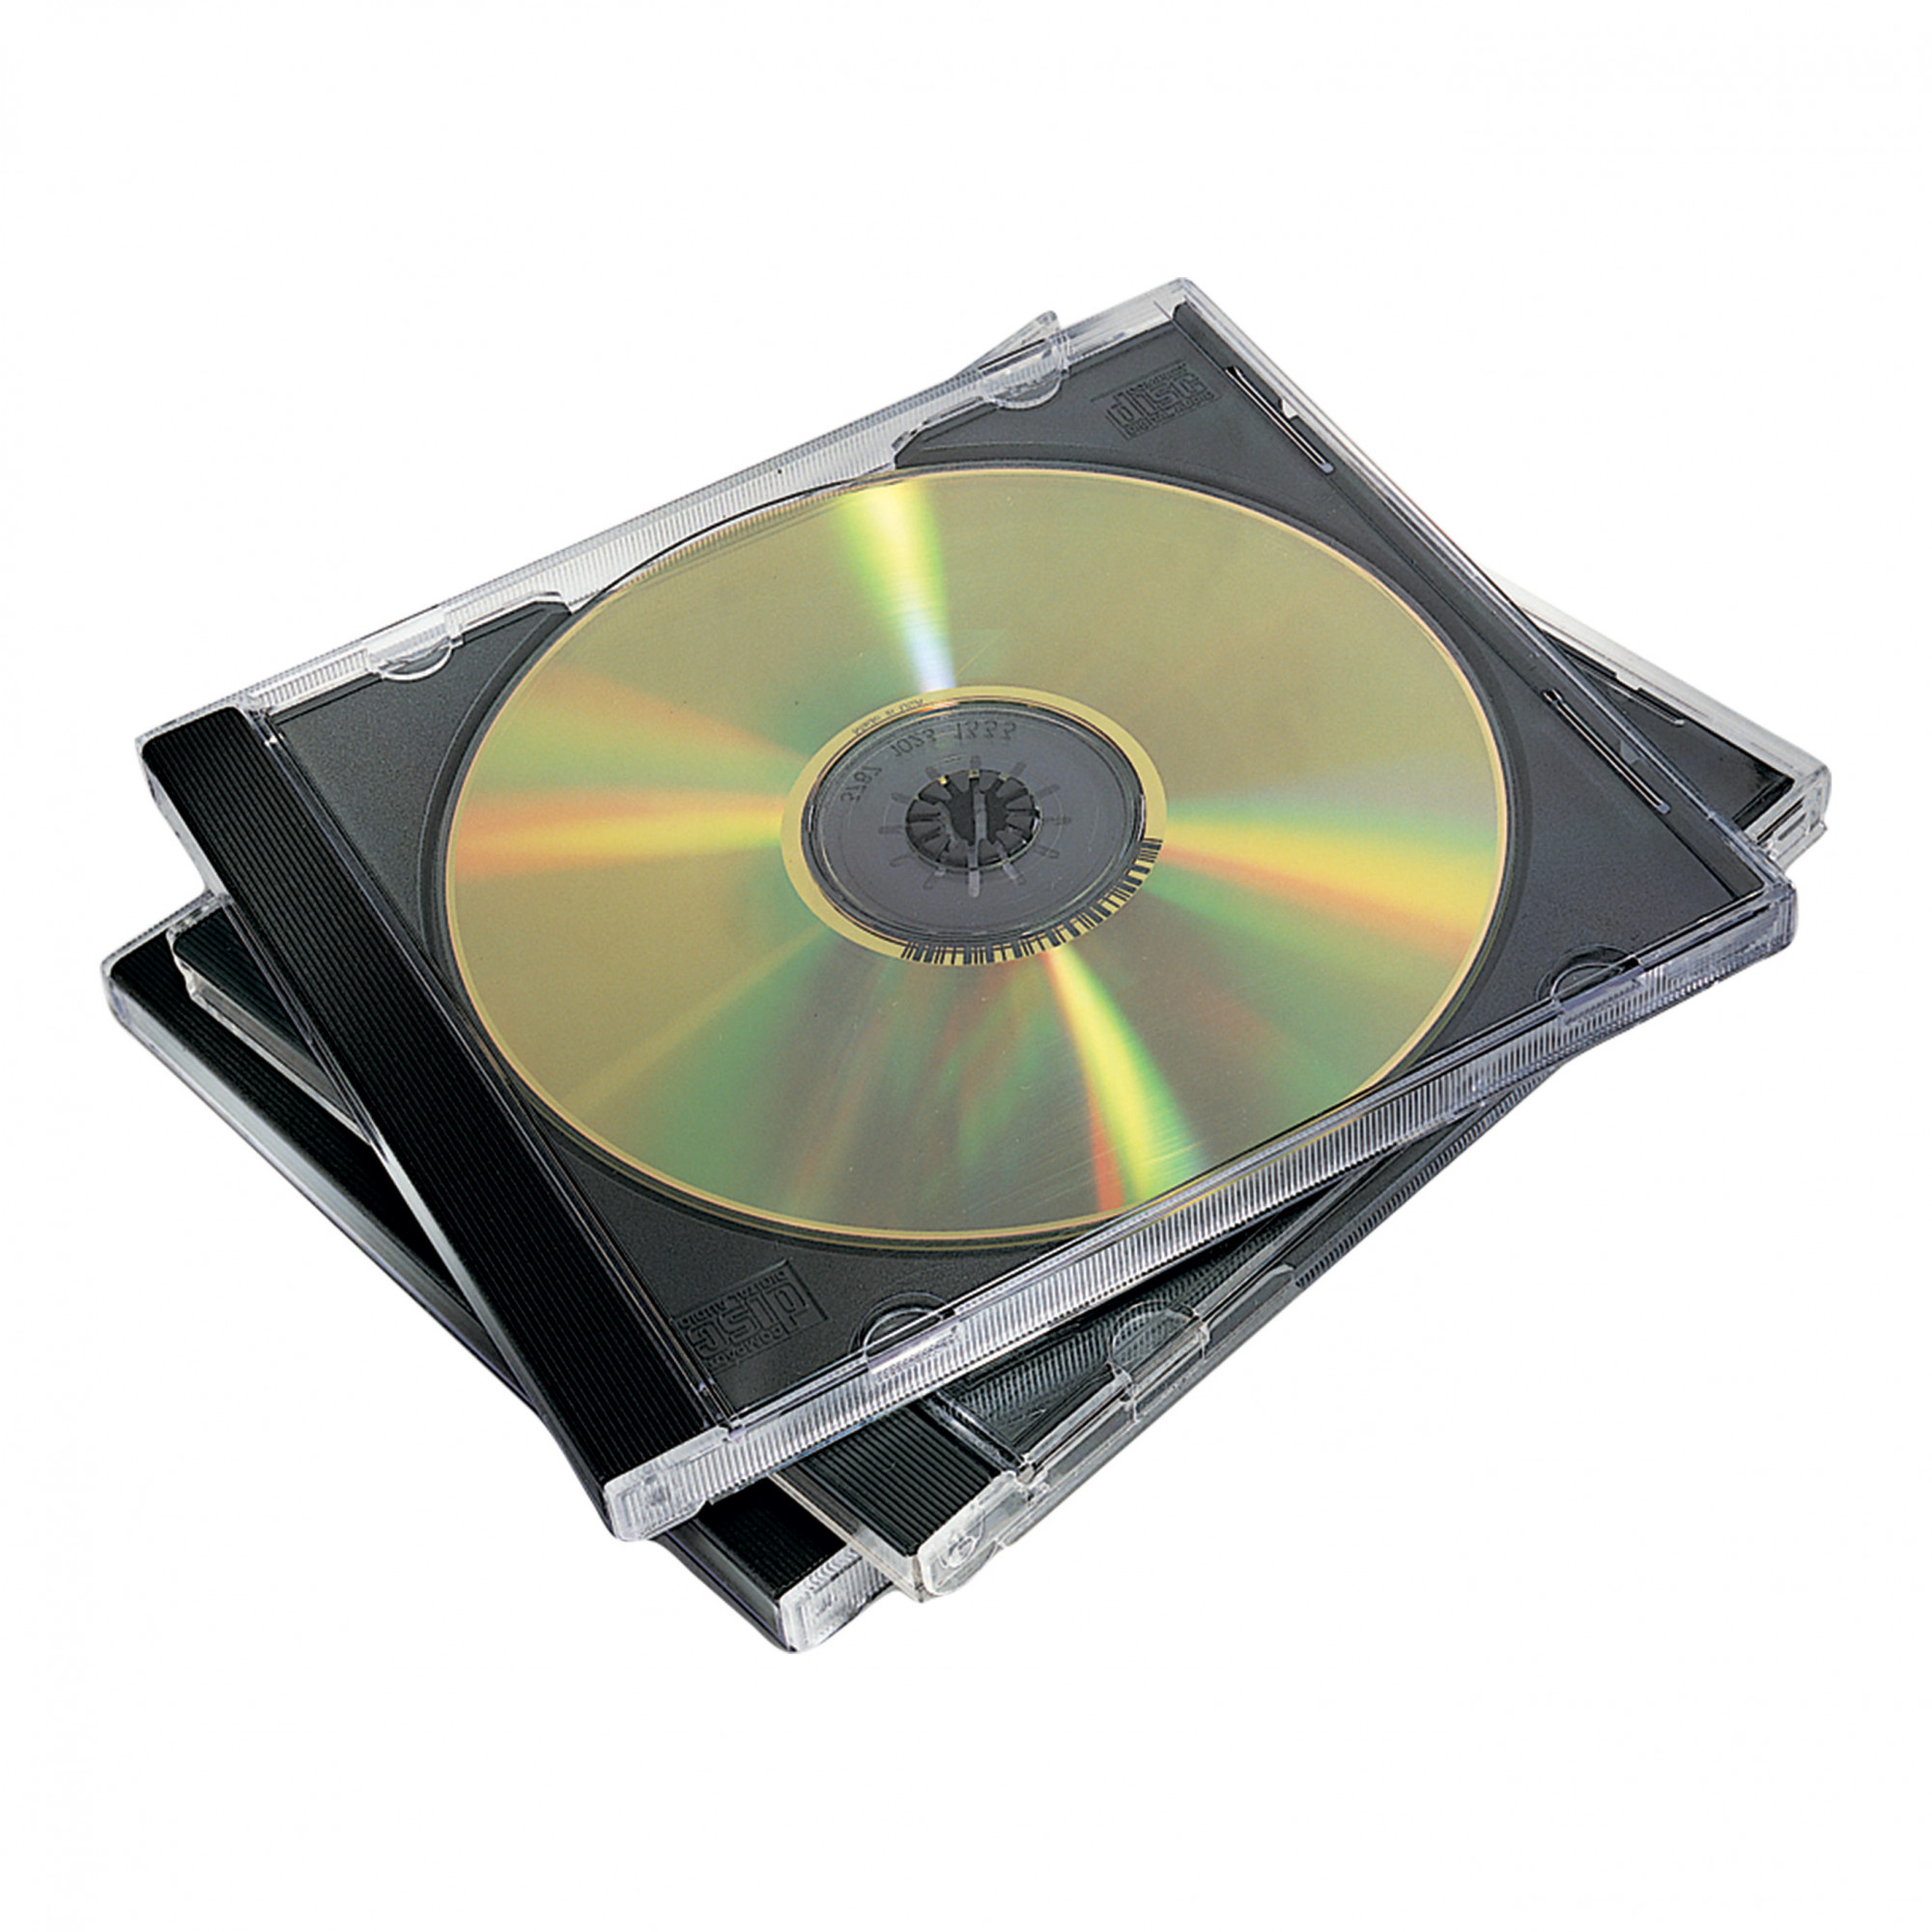 Долговременная память 2. CD - Compact Disk (компакт диск). CD (Compact Disc) — оптический носитель. DVD- DVD (4-16 Hbayt). CD-Case 3cd.